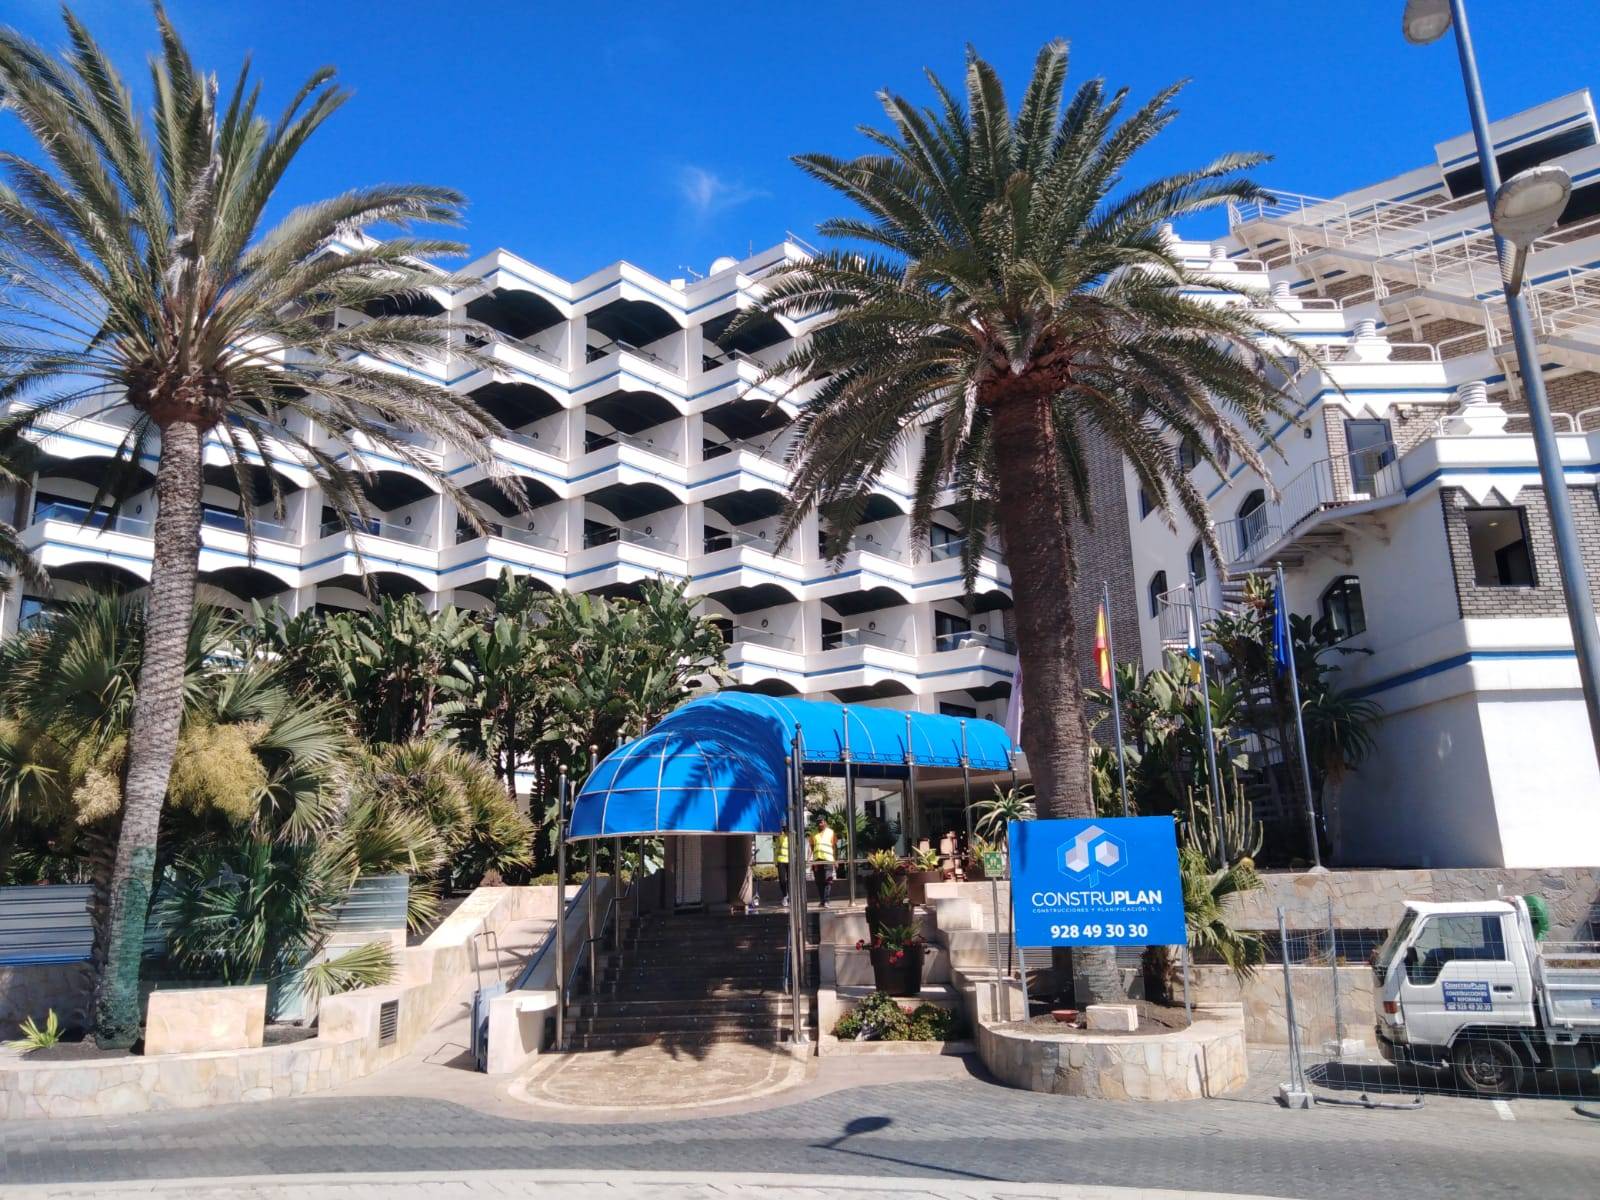 Comienzan las obras en el Hotel IFA Faro. Maspalomas - Gran Canaria.